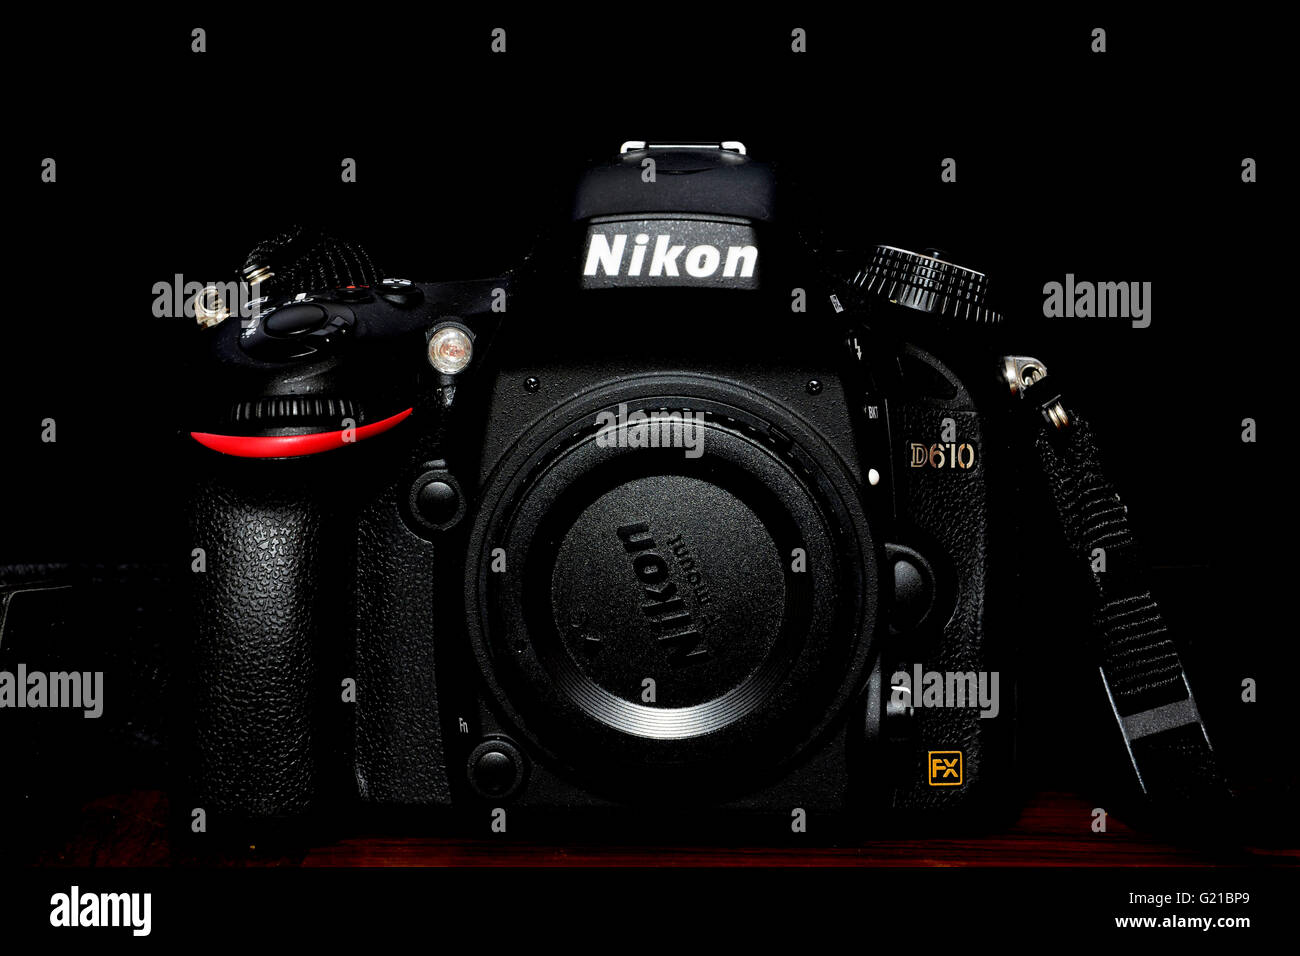 Todo el tiempo electo instructor Nikon d610 fotografías e imágenes de alta resolución - Alamy